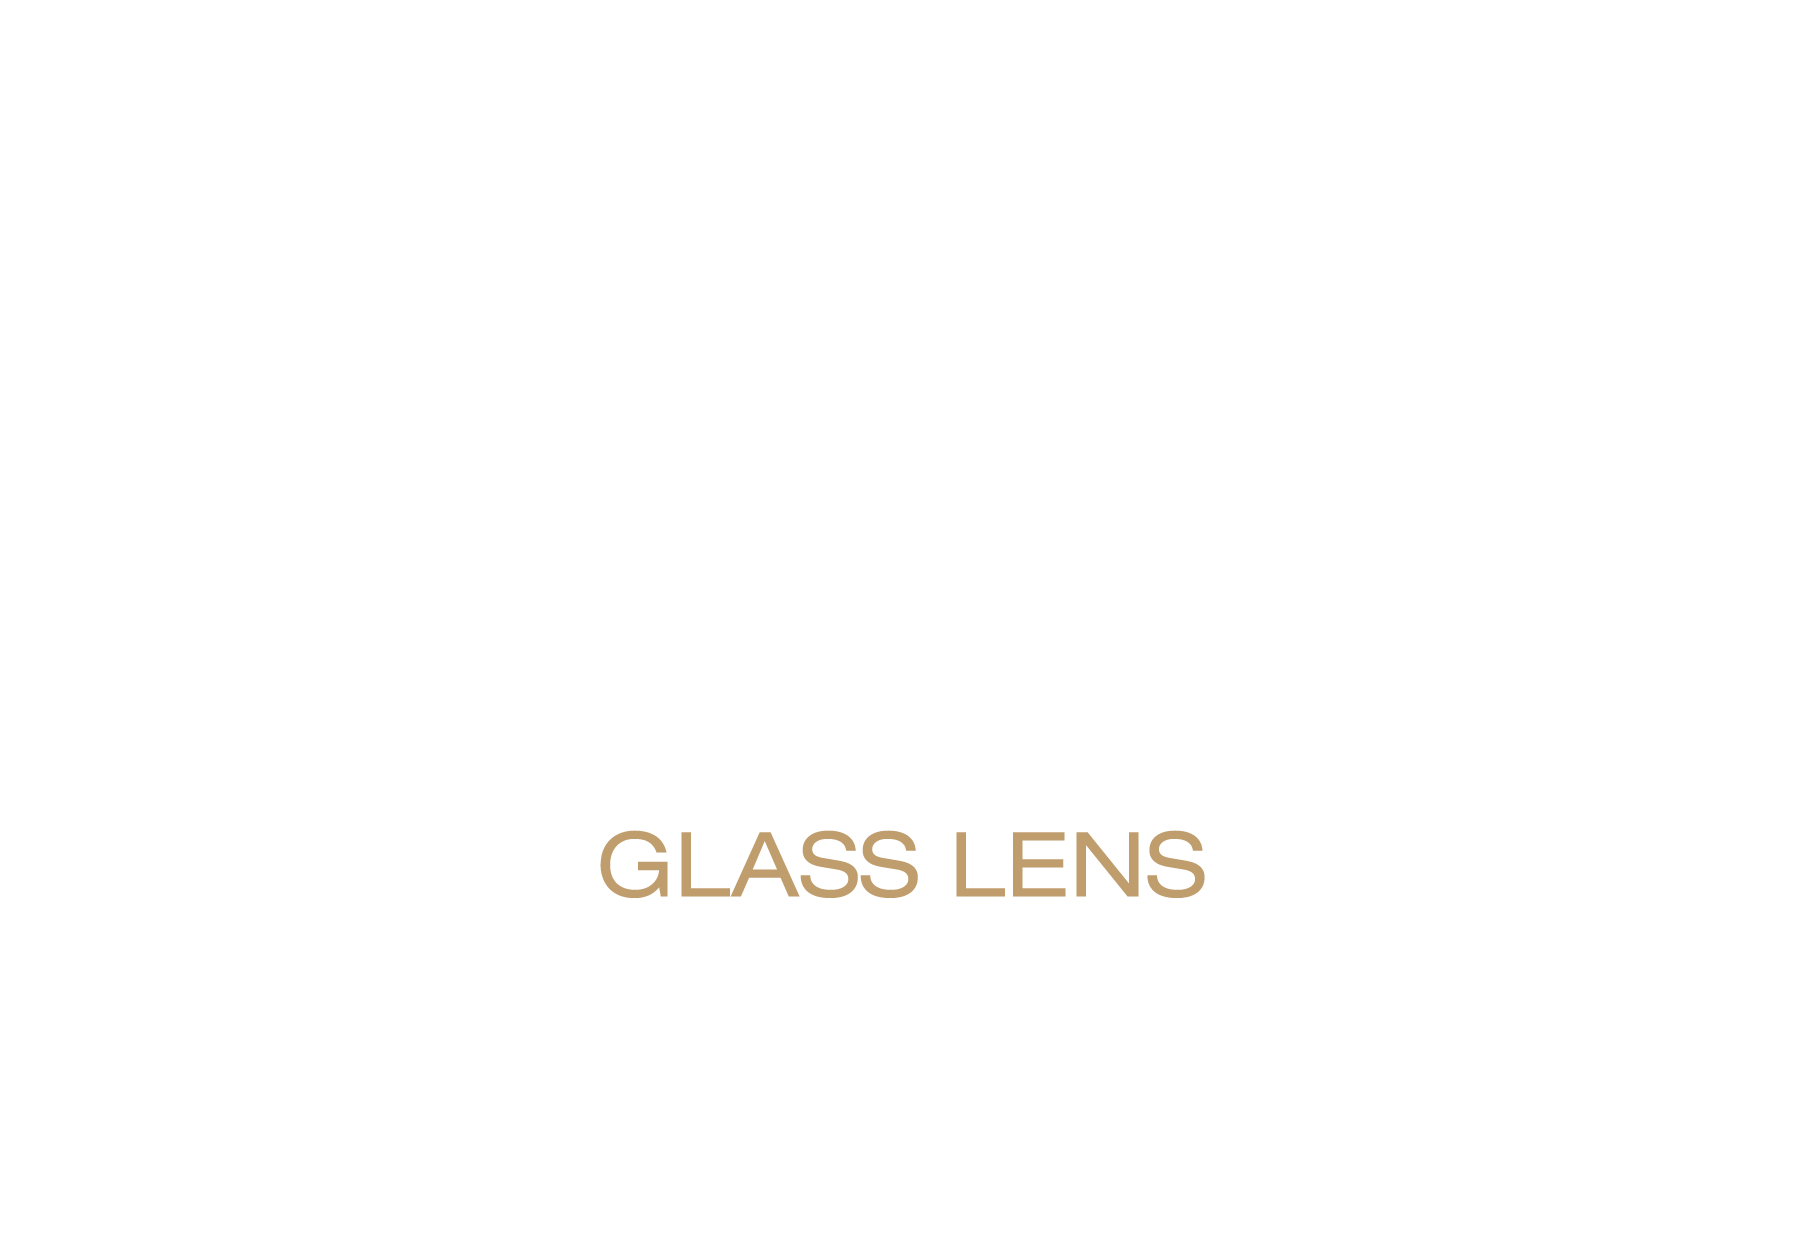 Epson VRX Cinema Lens | 15-Element Glass Lens